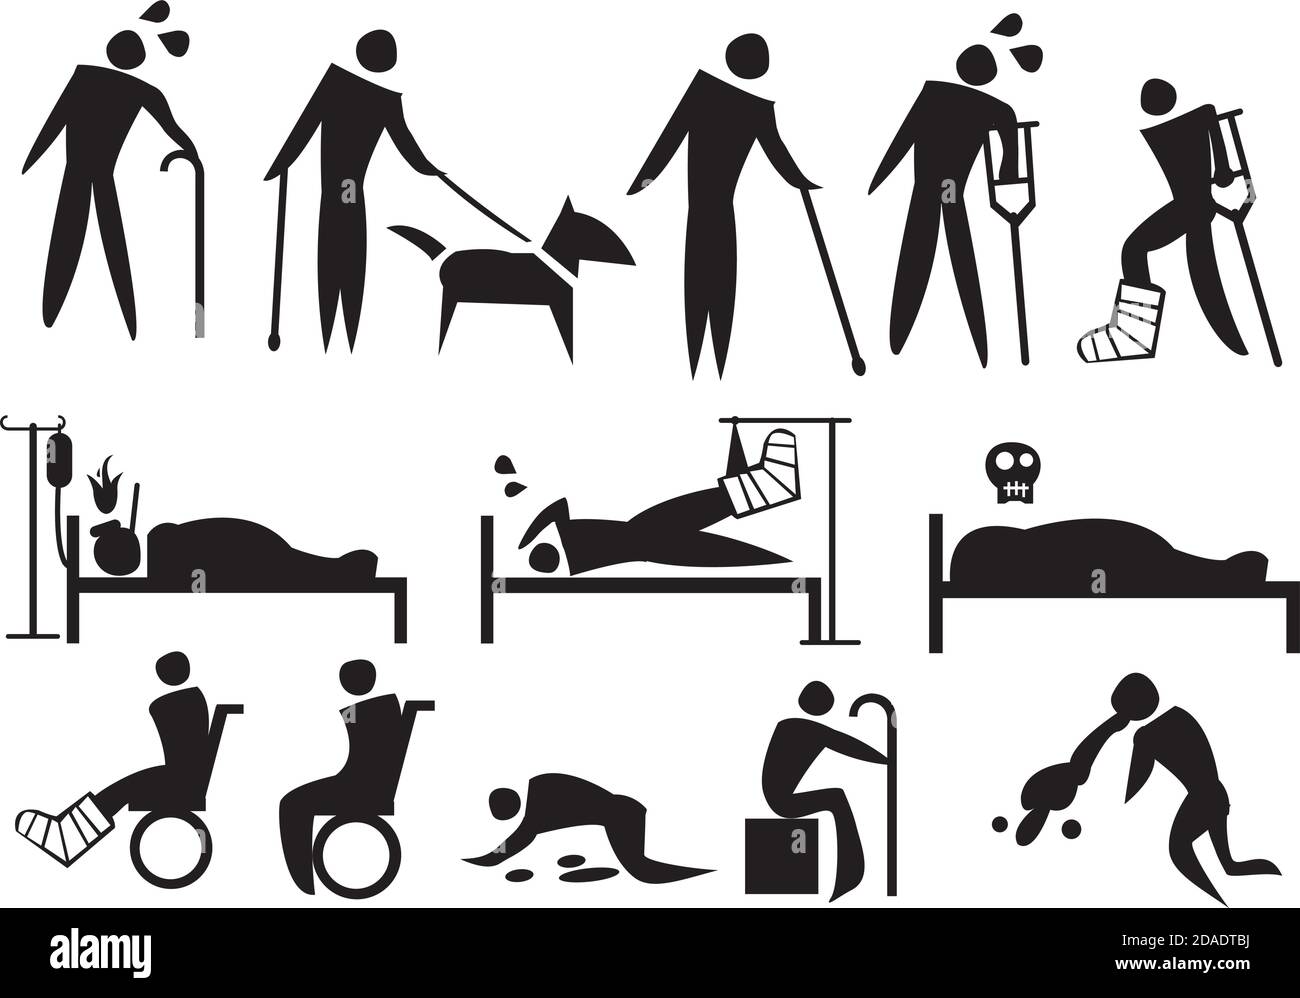 Illustration vectorielle des personnes souffrant de maladie, de handicap et de souffrance. Ensemble d'icônes conceptuelles. Illustration de Vecteur